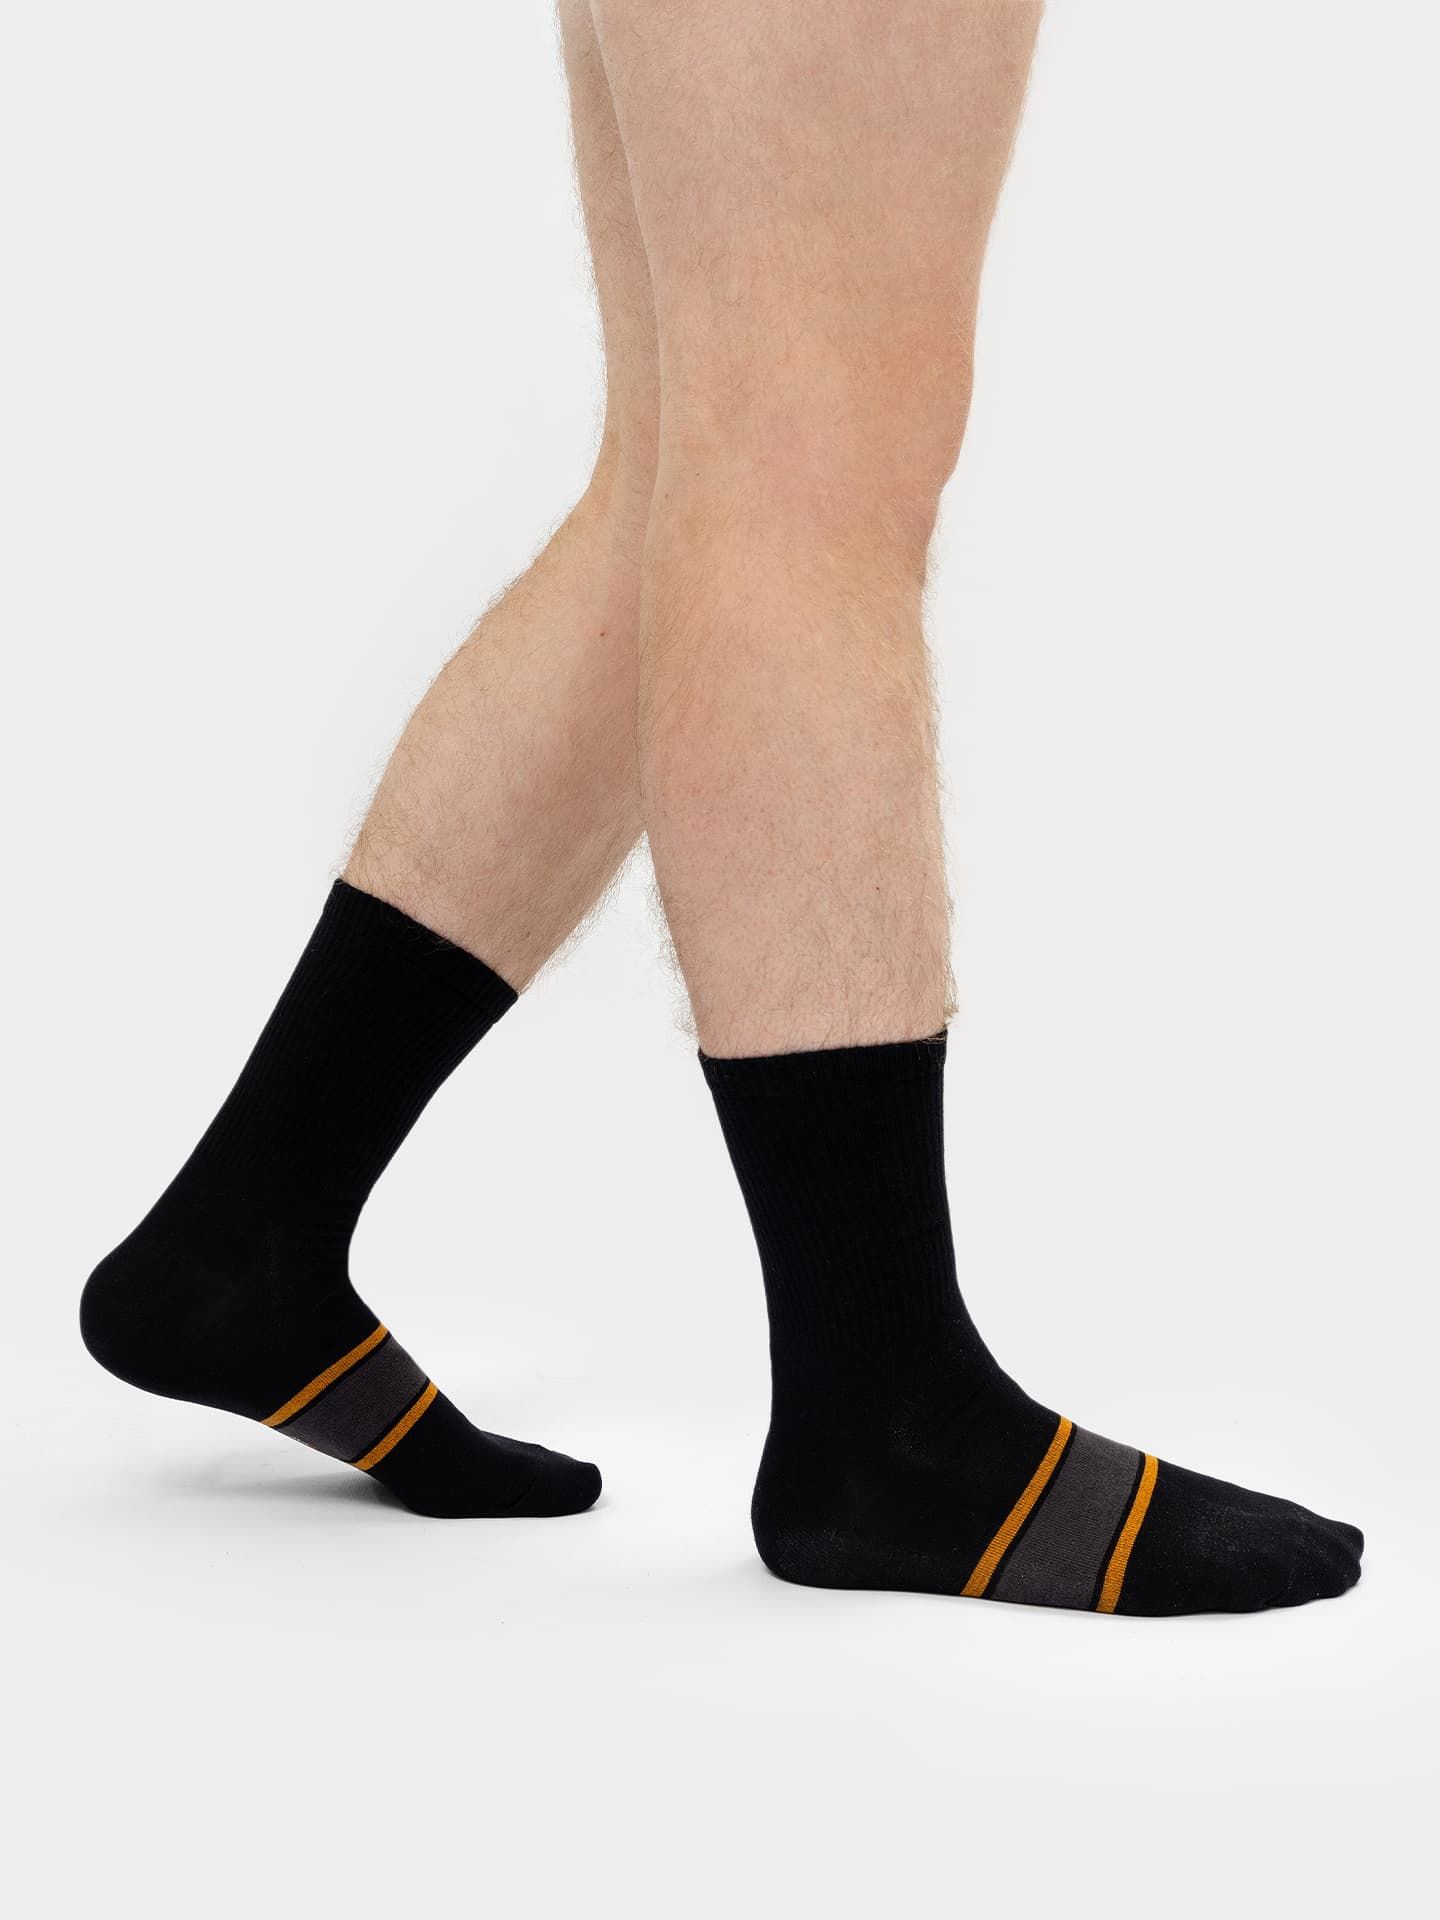 Носки мужские классические черные с желто-серой полоской на следу